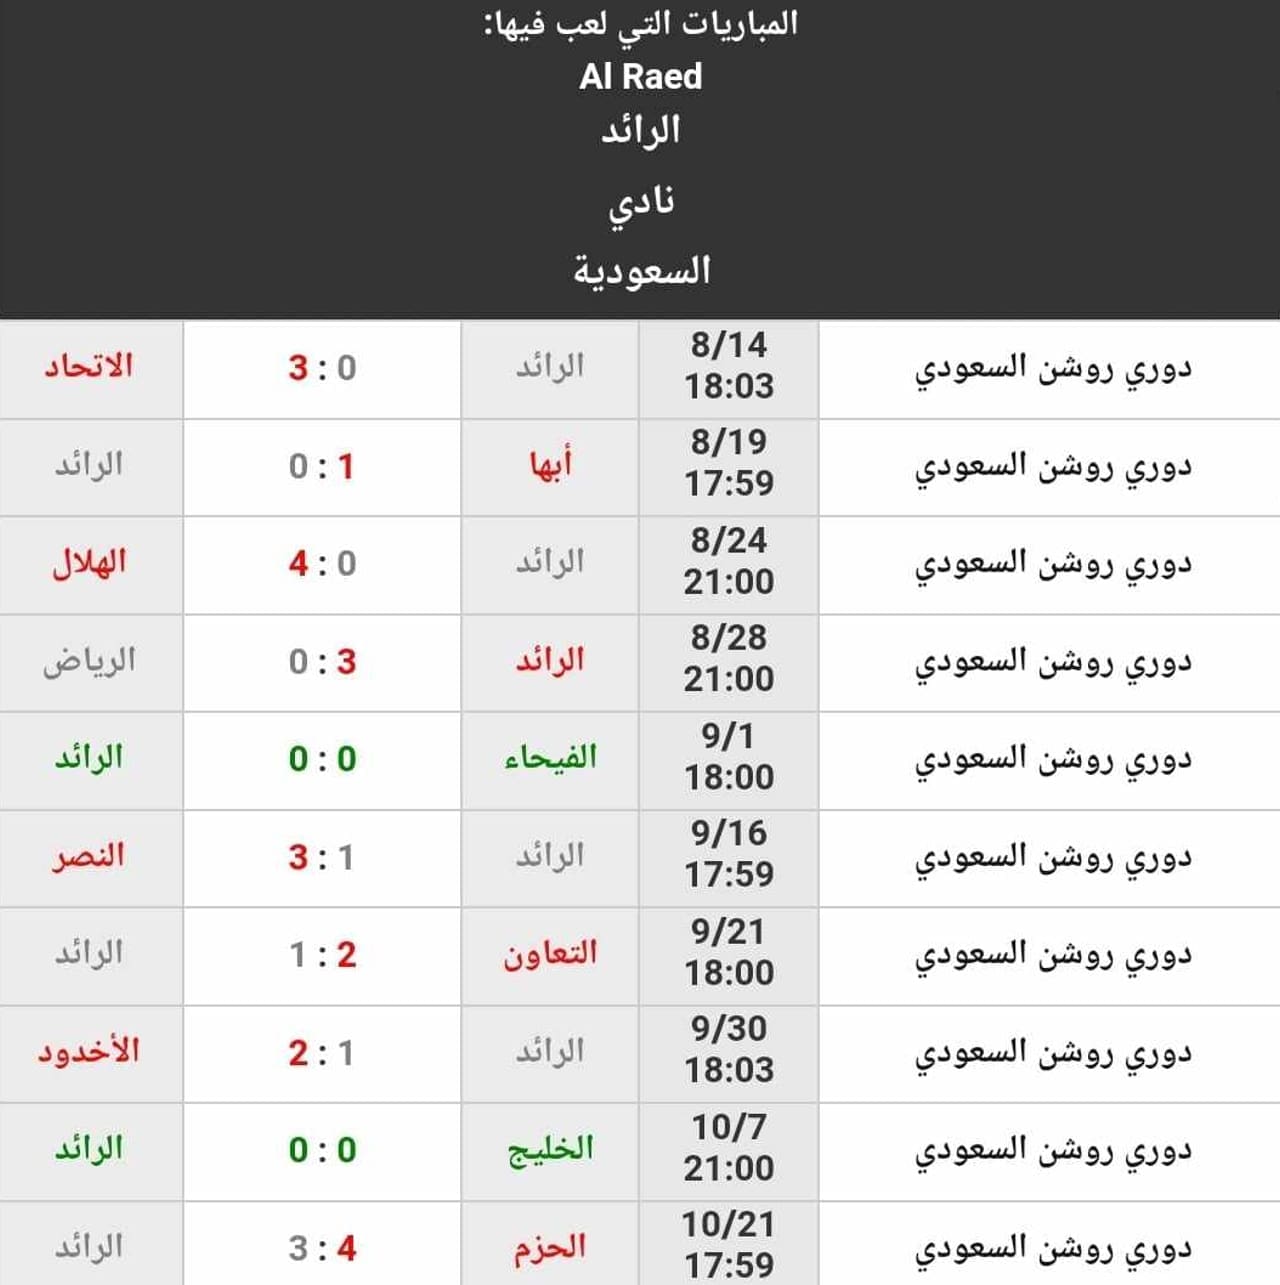 نتائج نادي الرائد حتى الجولة 10 من الدوري السعودي (المصدر. موقع كووورة)